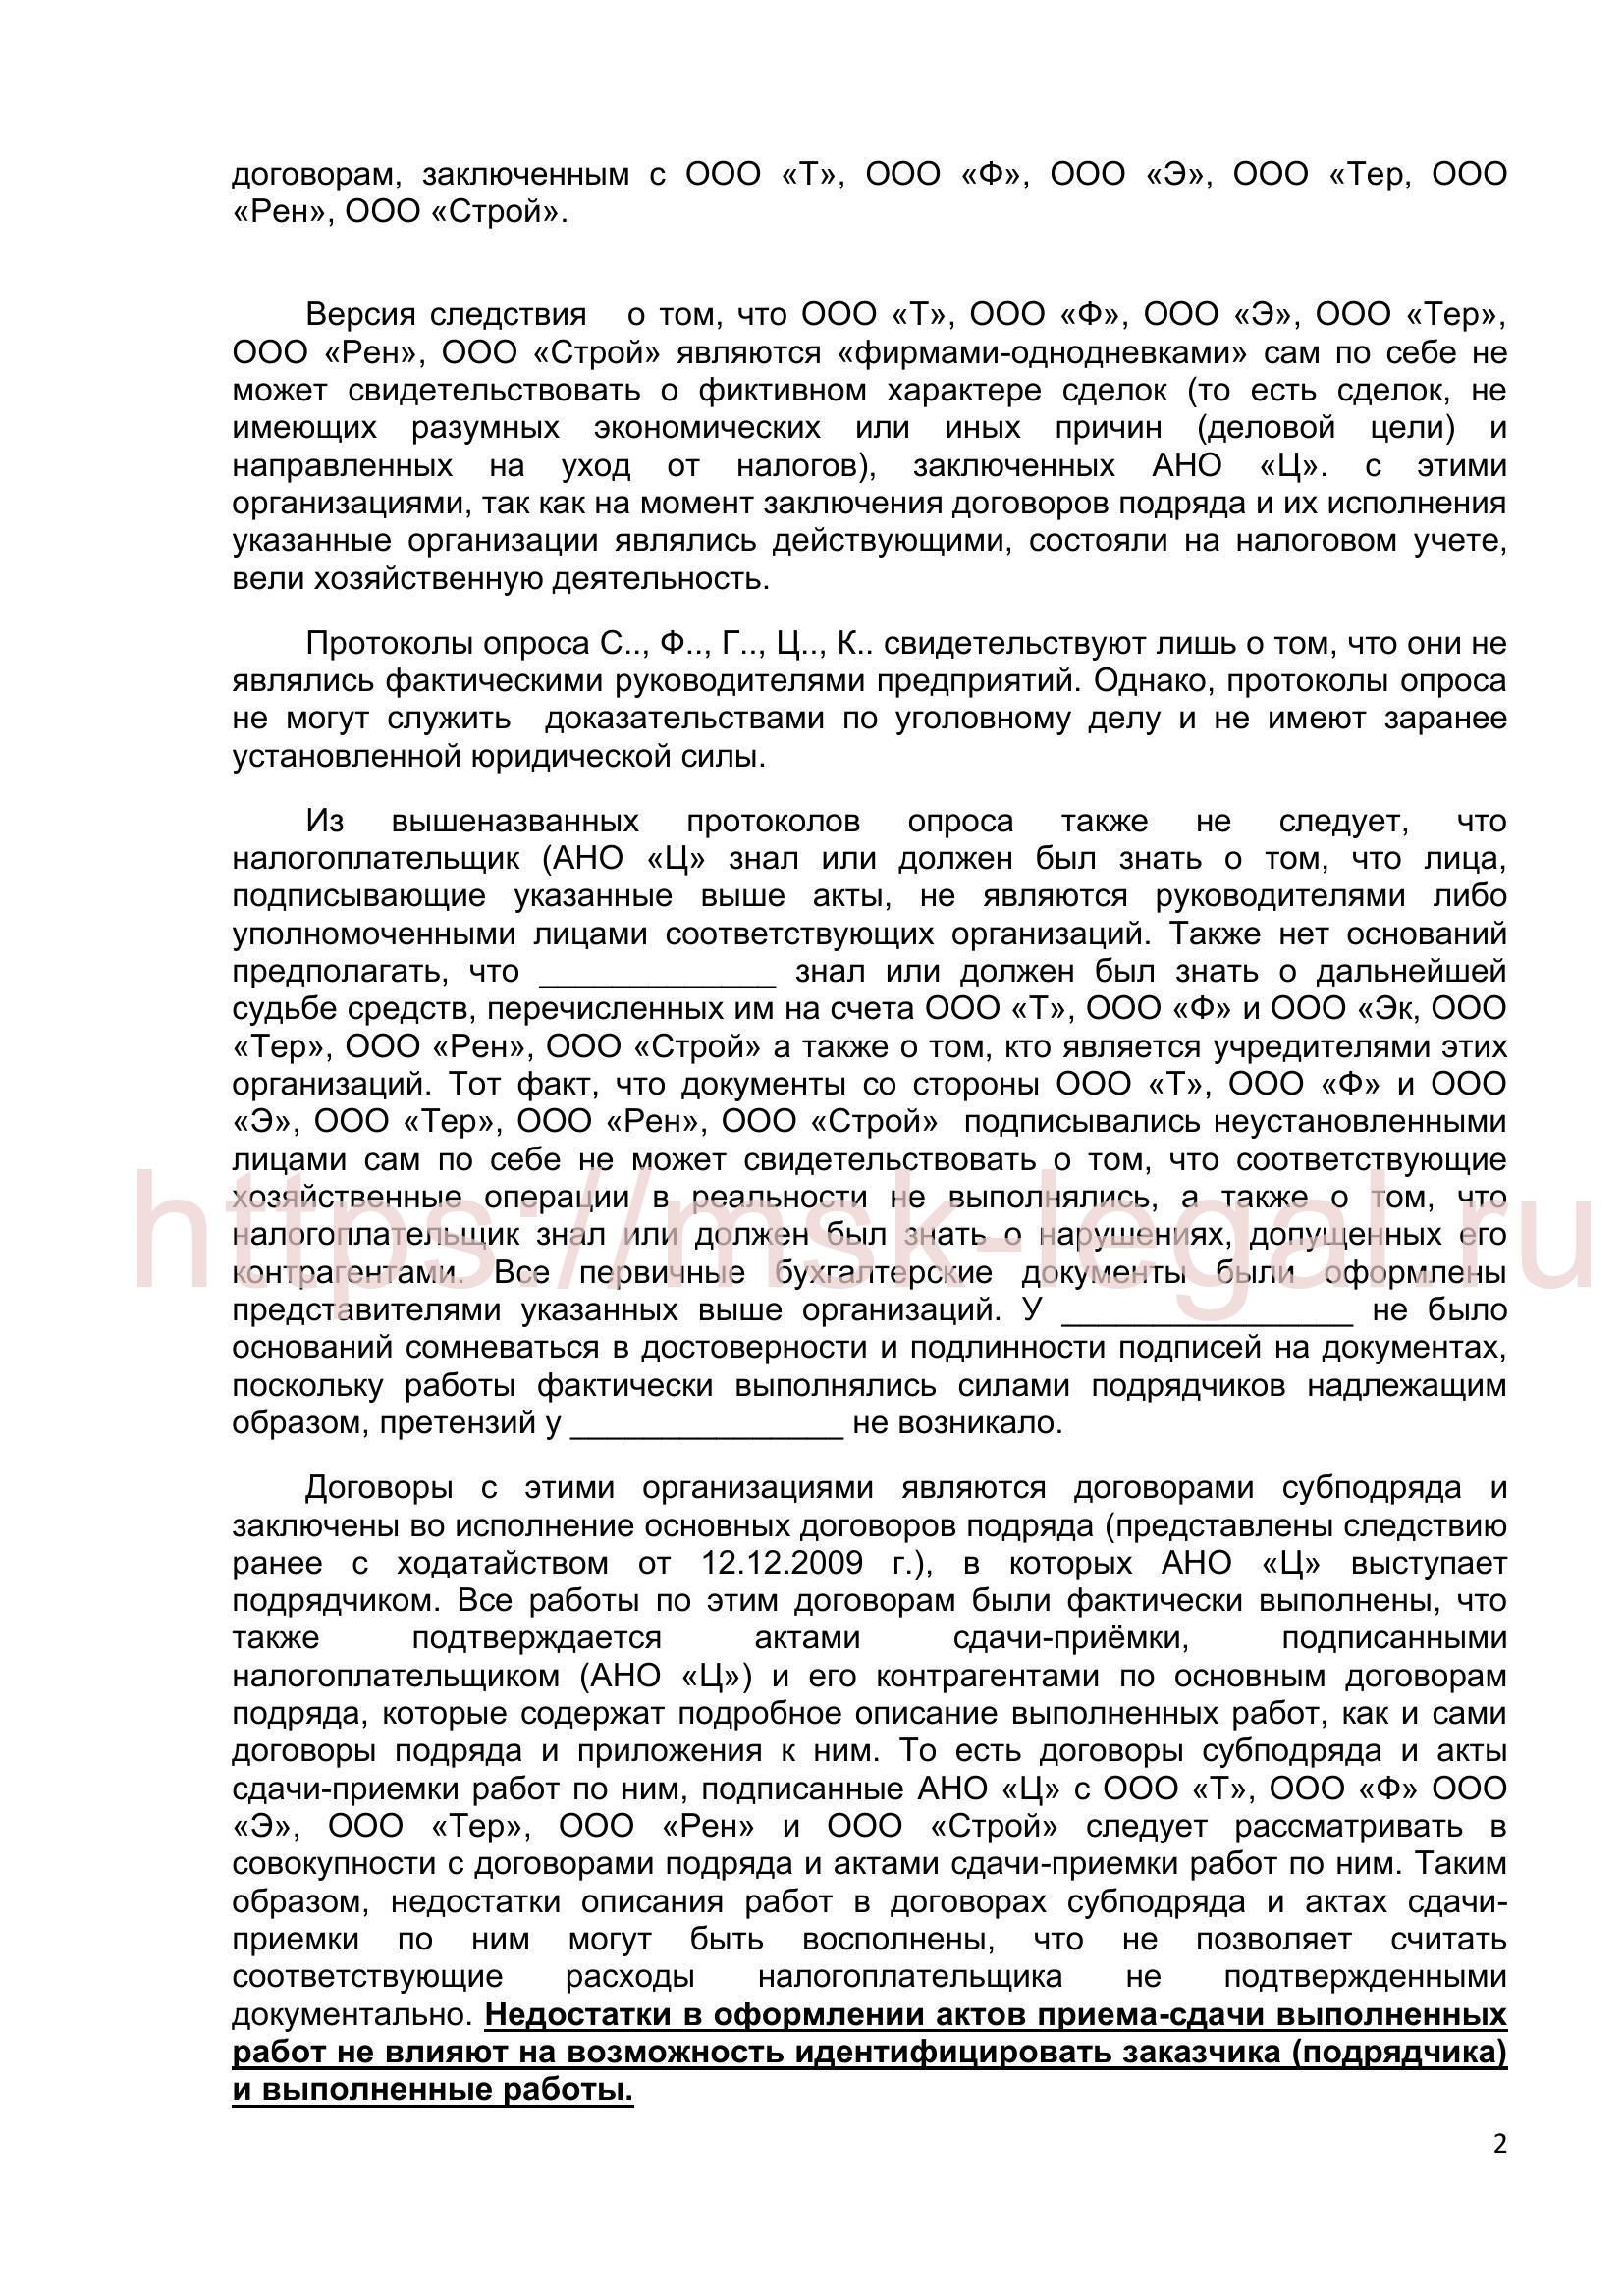 Ходатайство о прекращении уголовного дела по ст. 199 УК РФ на основании п. 2 ч. 1ст. 24 УПК РФ